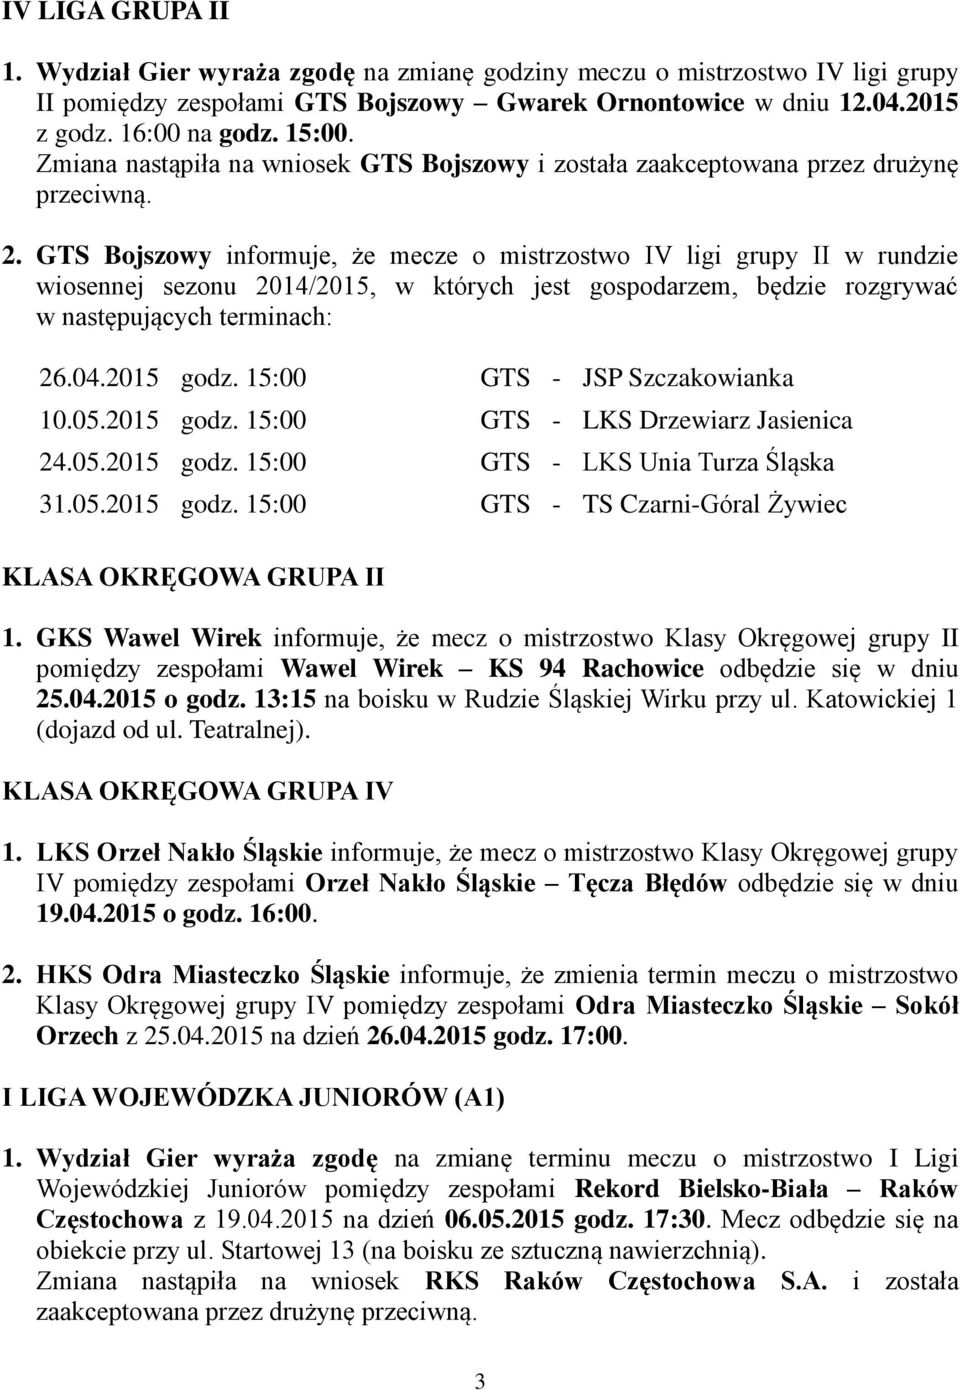 GTS Bojszowy informuje, że mecze o mistrzostwo IV ligi grupy II w rundzie wiosennej sezonu 2014/2015, w których jest gospodarzem, będzie rozgrywać w następujących terminach: 26.04.2015 godz.